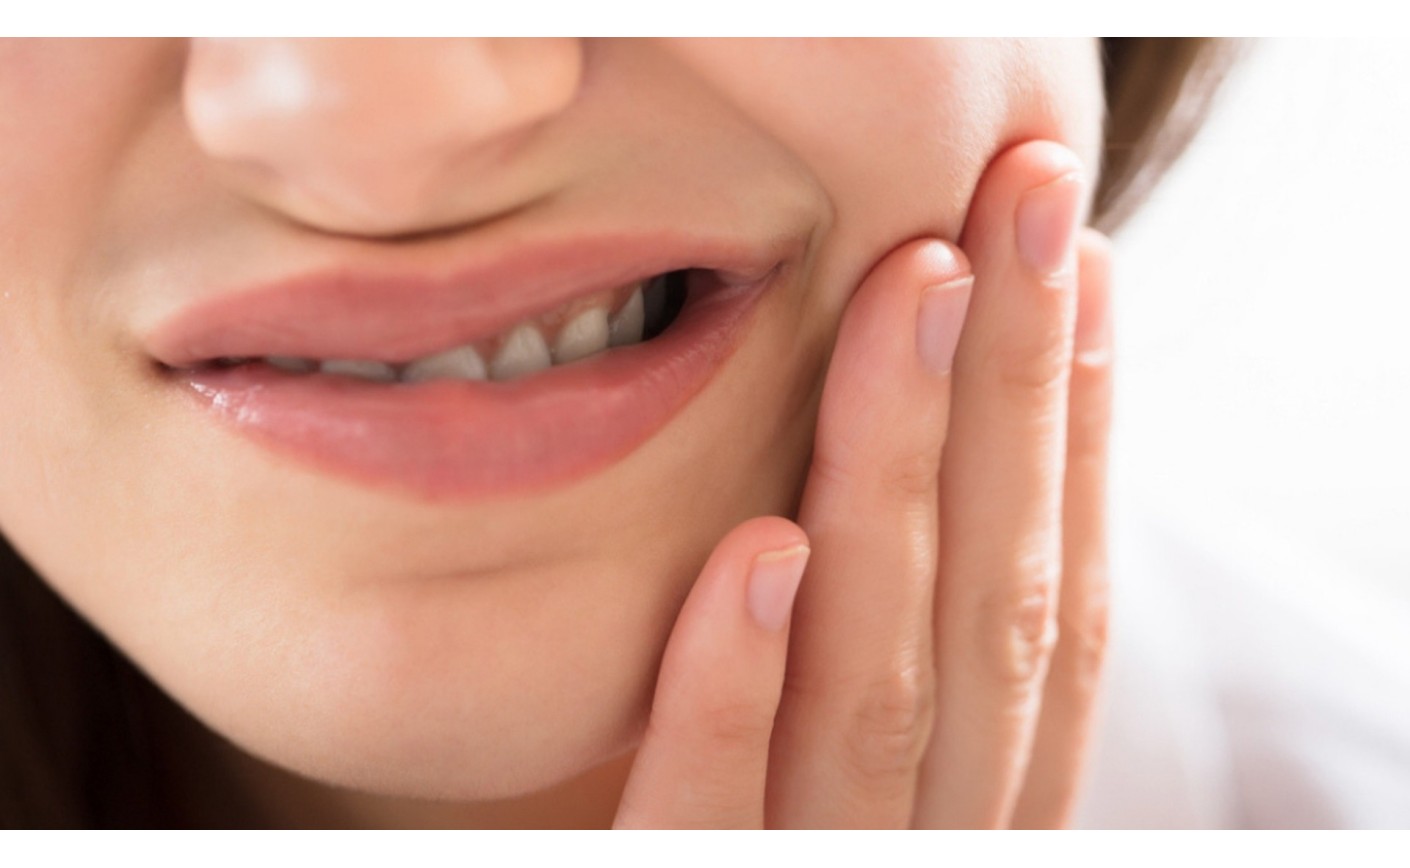 Afte della bocca: come trattarle